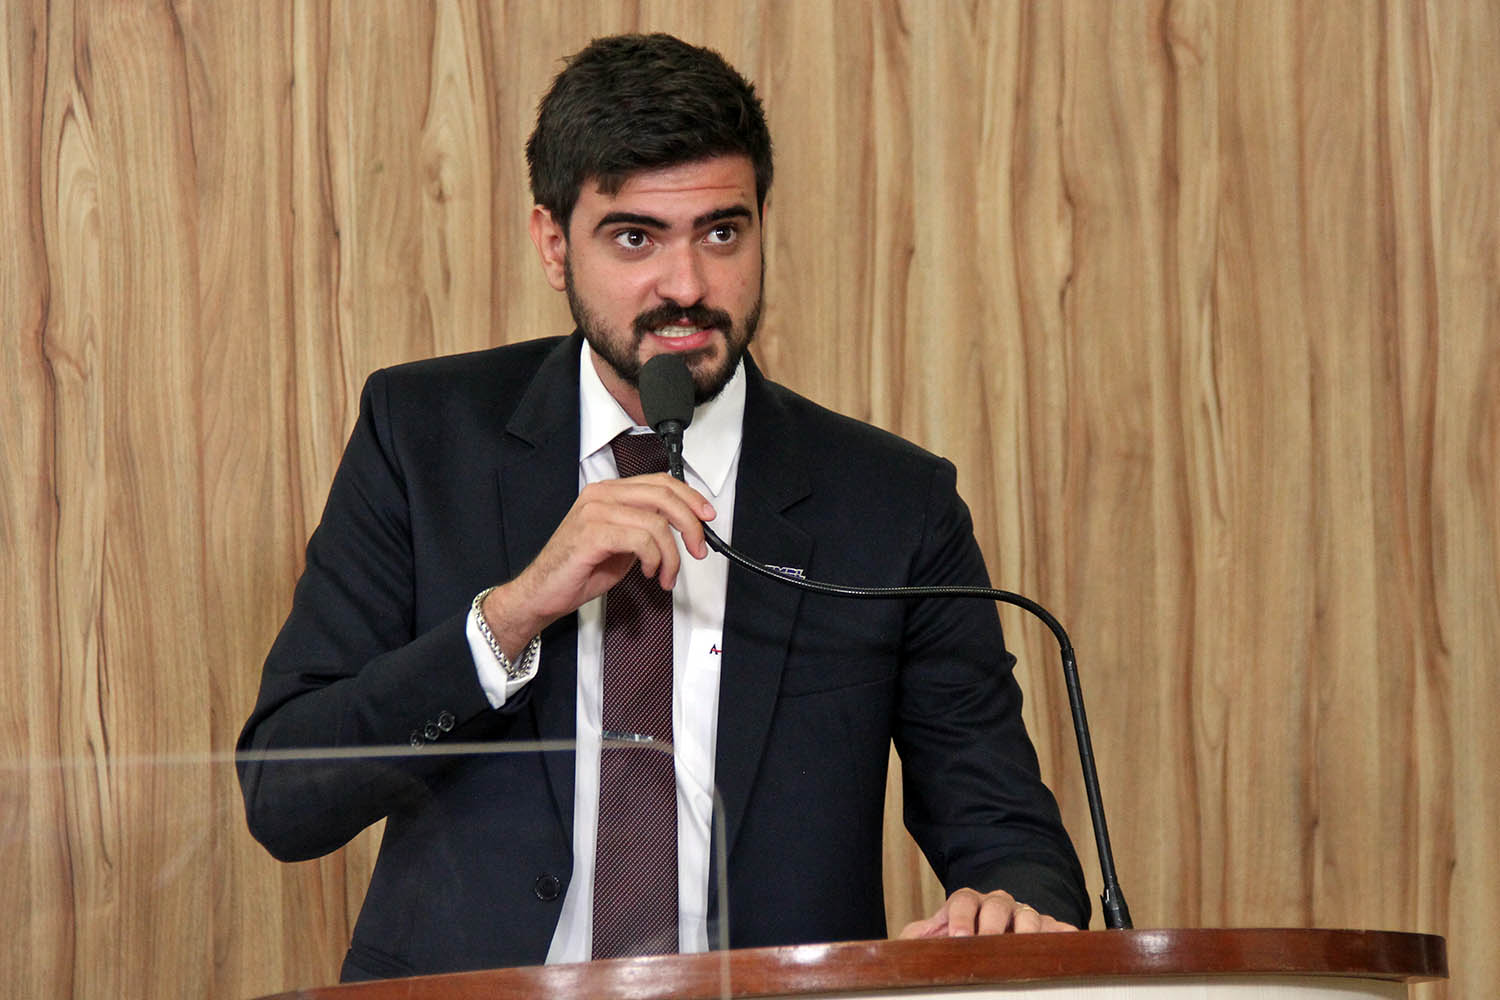 #PraCegoVer: Foto mostra o vereador Gabriel Bueno discursando na tribuna da Câmara.